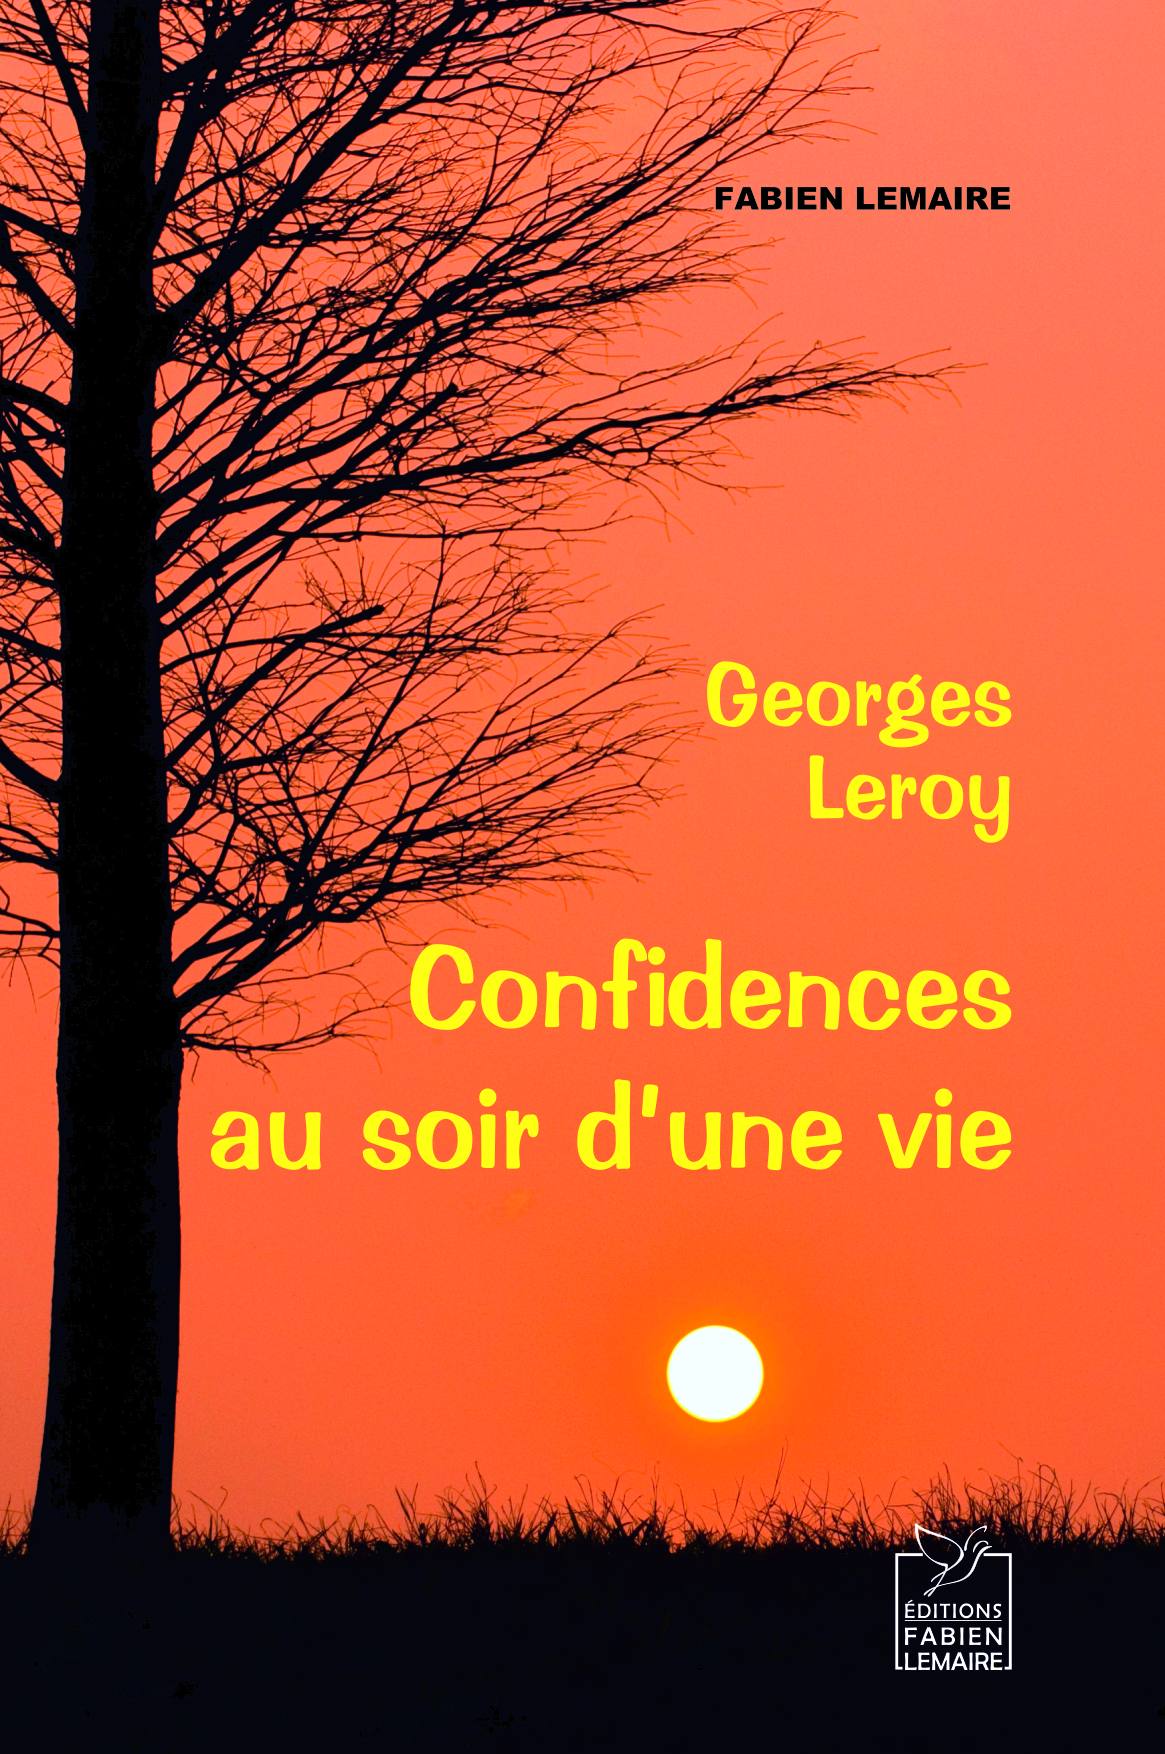 Georges Leroy, confidences au soir d'une vie